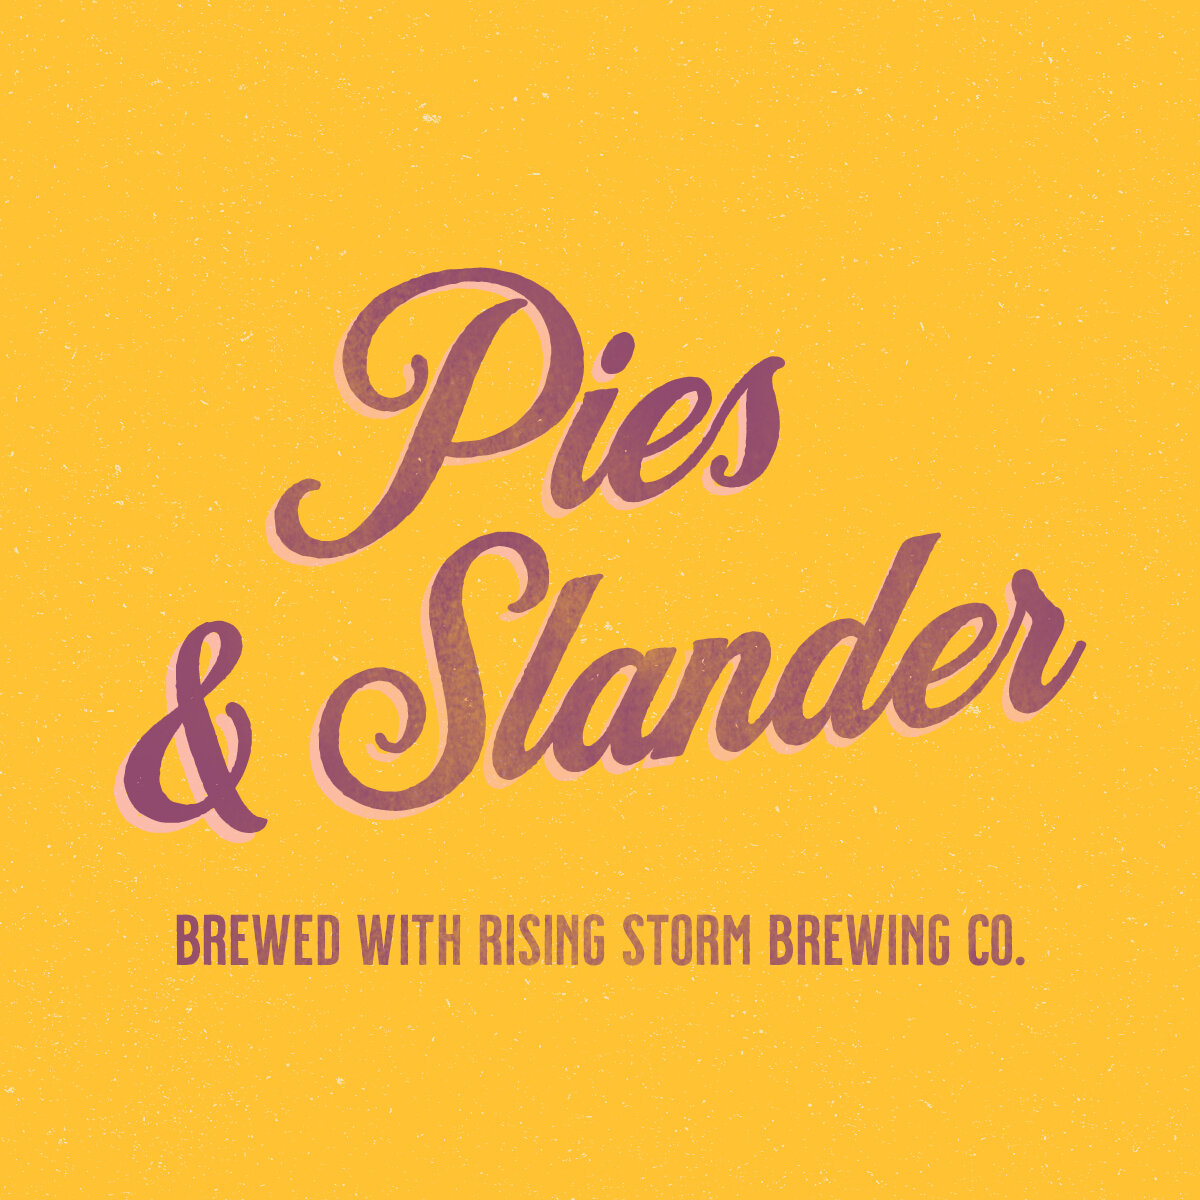 Pies and Slander! 